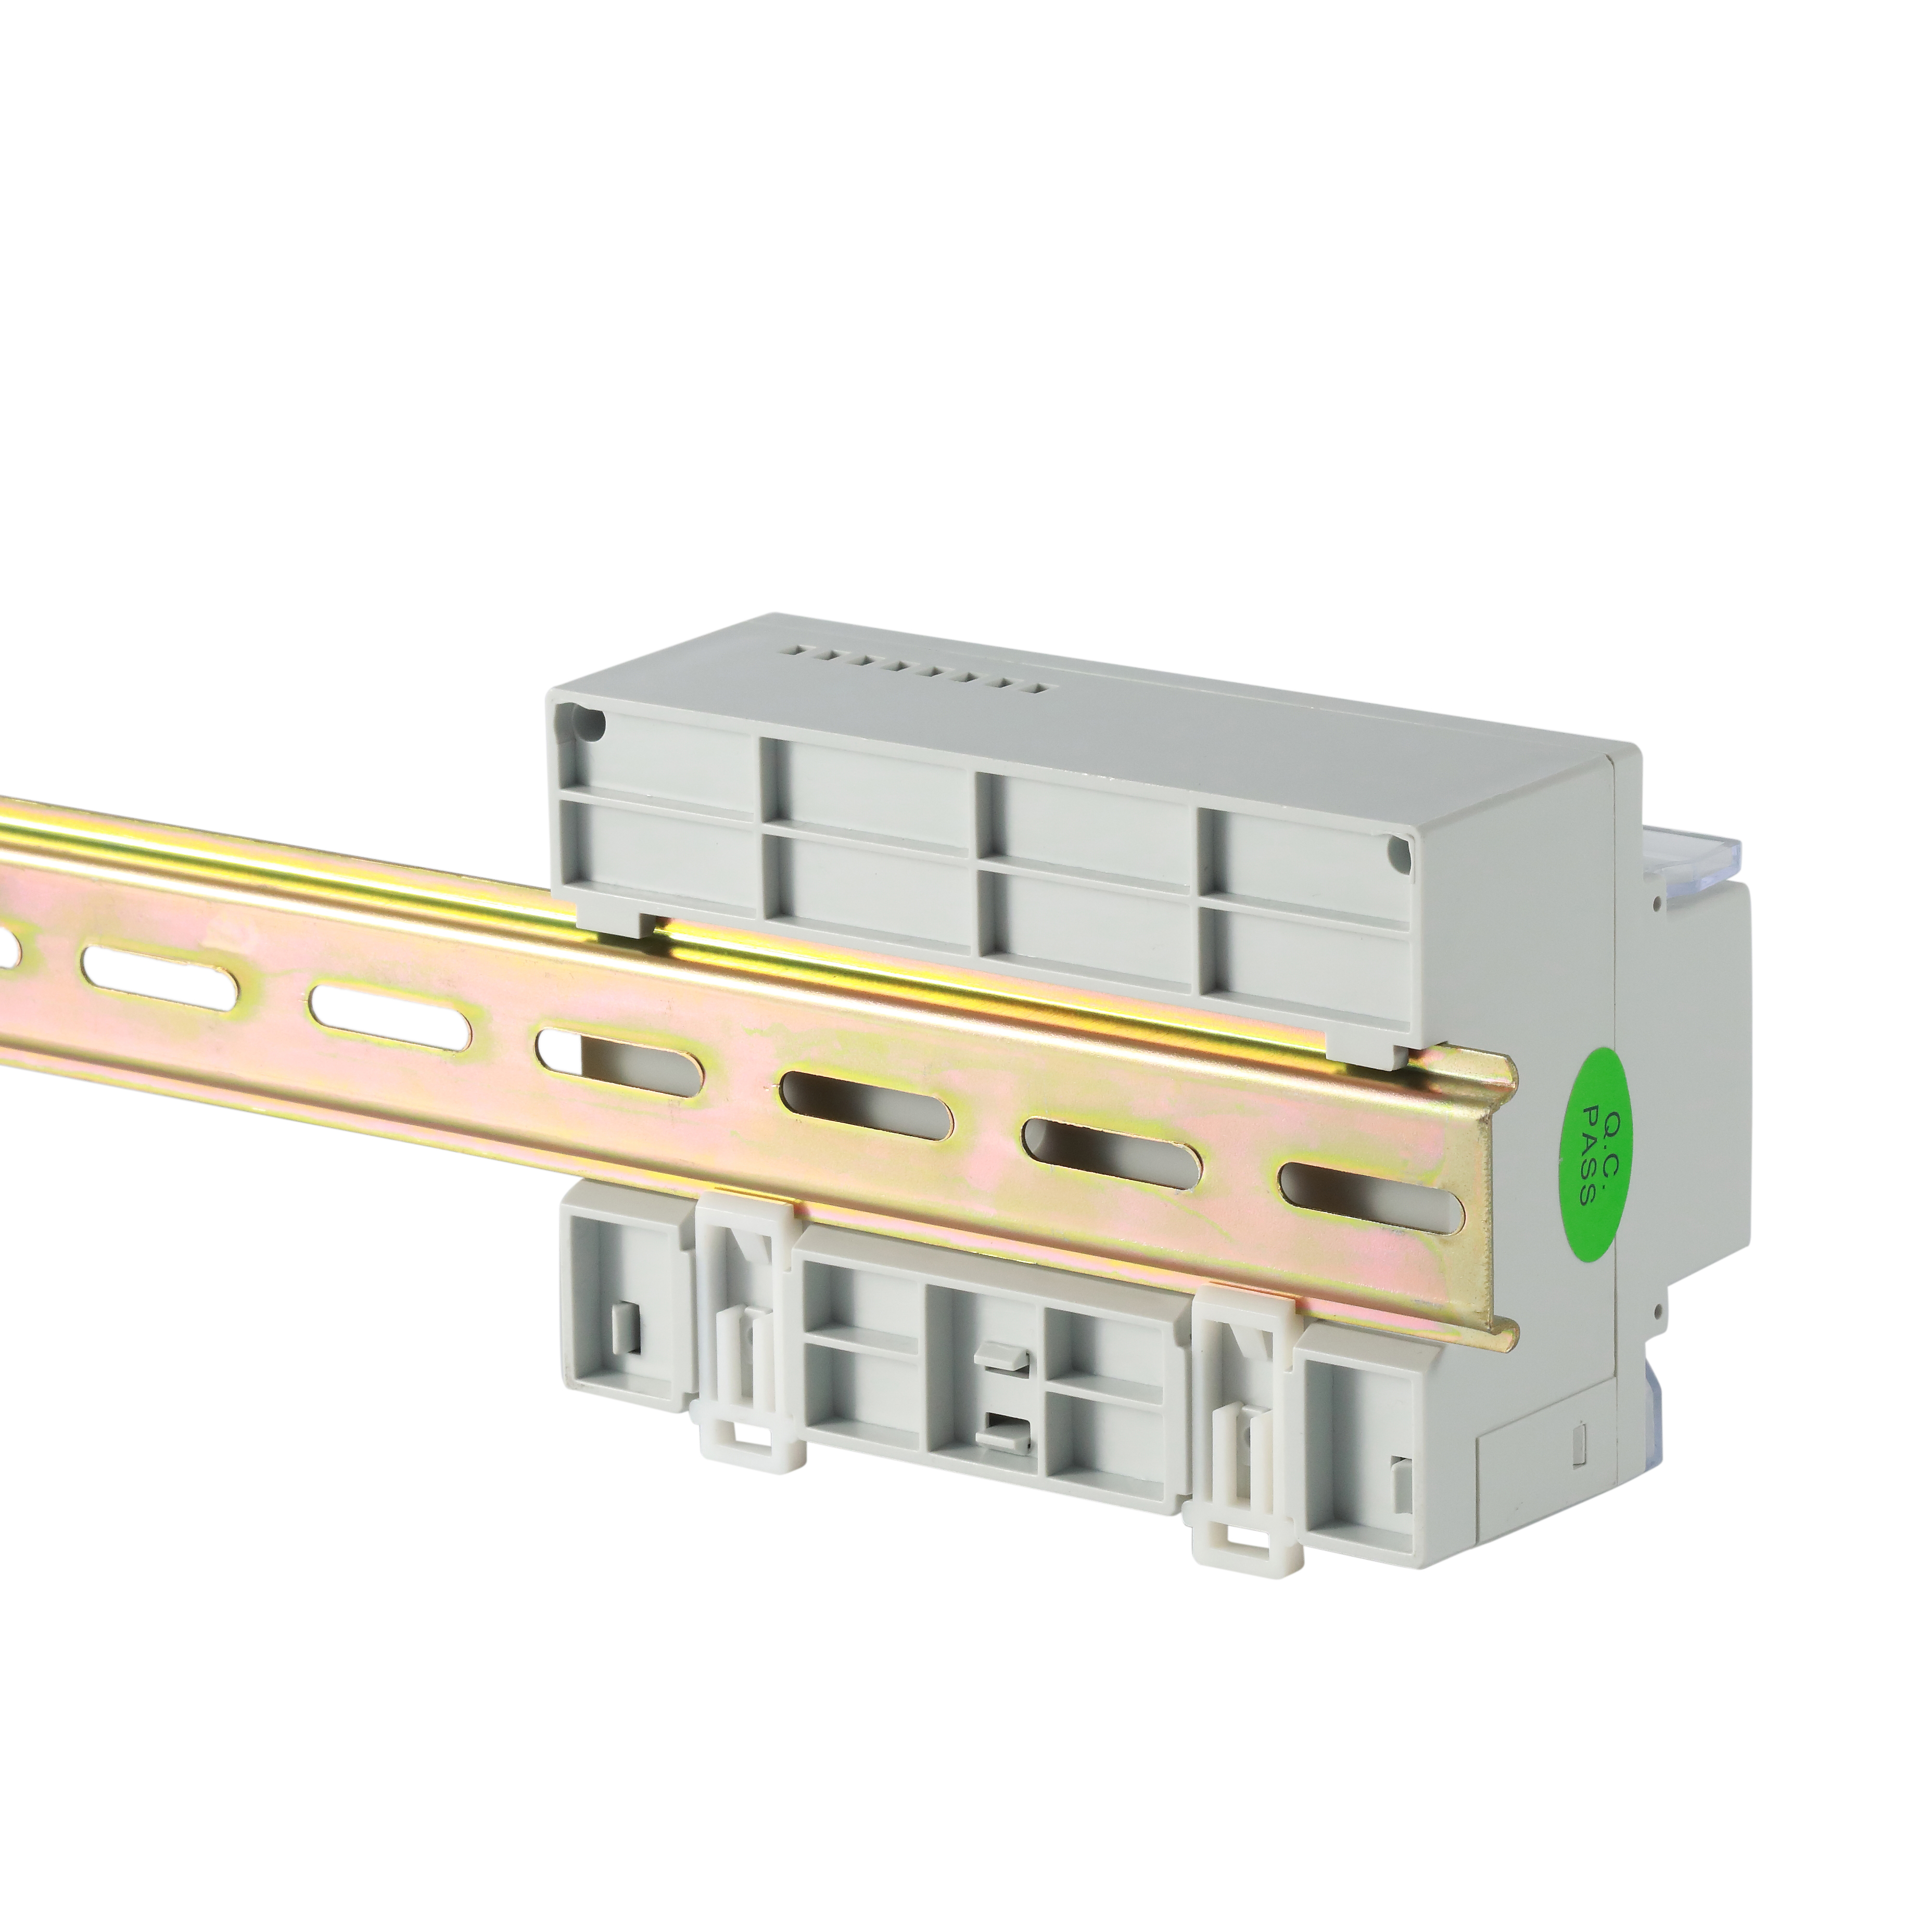 安科瑞DTSD1352-FC多功能电表全电参量测量电能表分时计费开关量